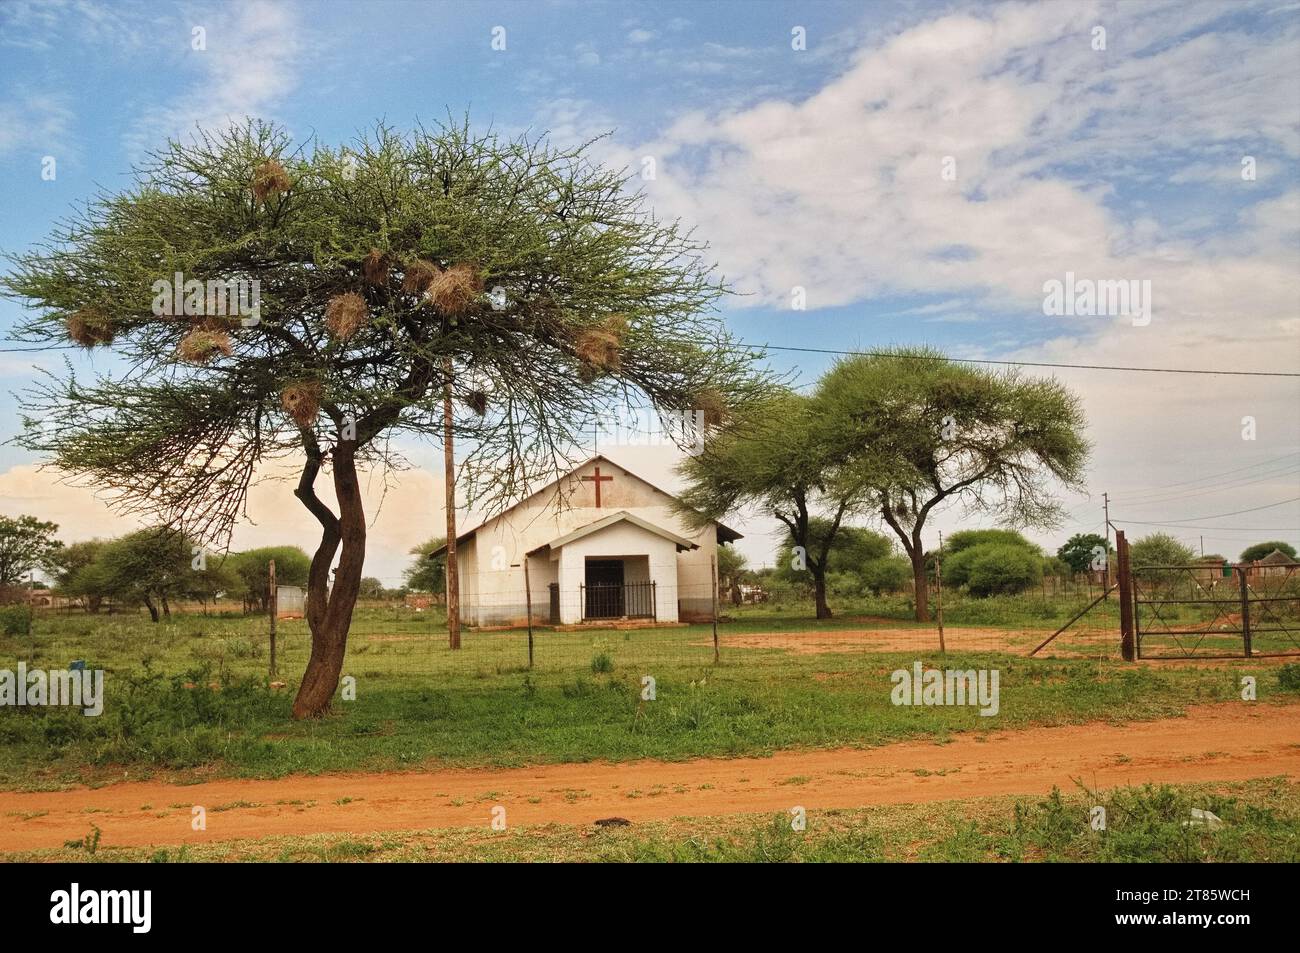 Bâtiment de l'église luthérienne dans un village africain vierge où le bétail boit dans les étangs et les gens préfèrent encore le vélo comme moyen de transport Banque D'Images